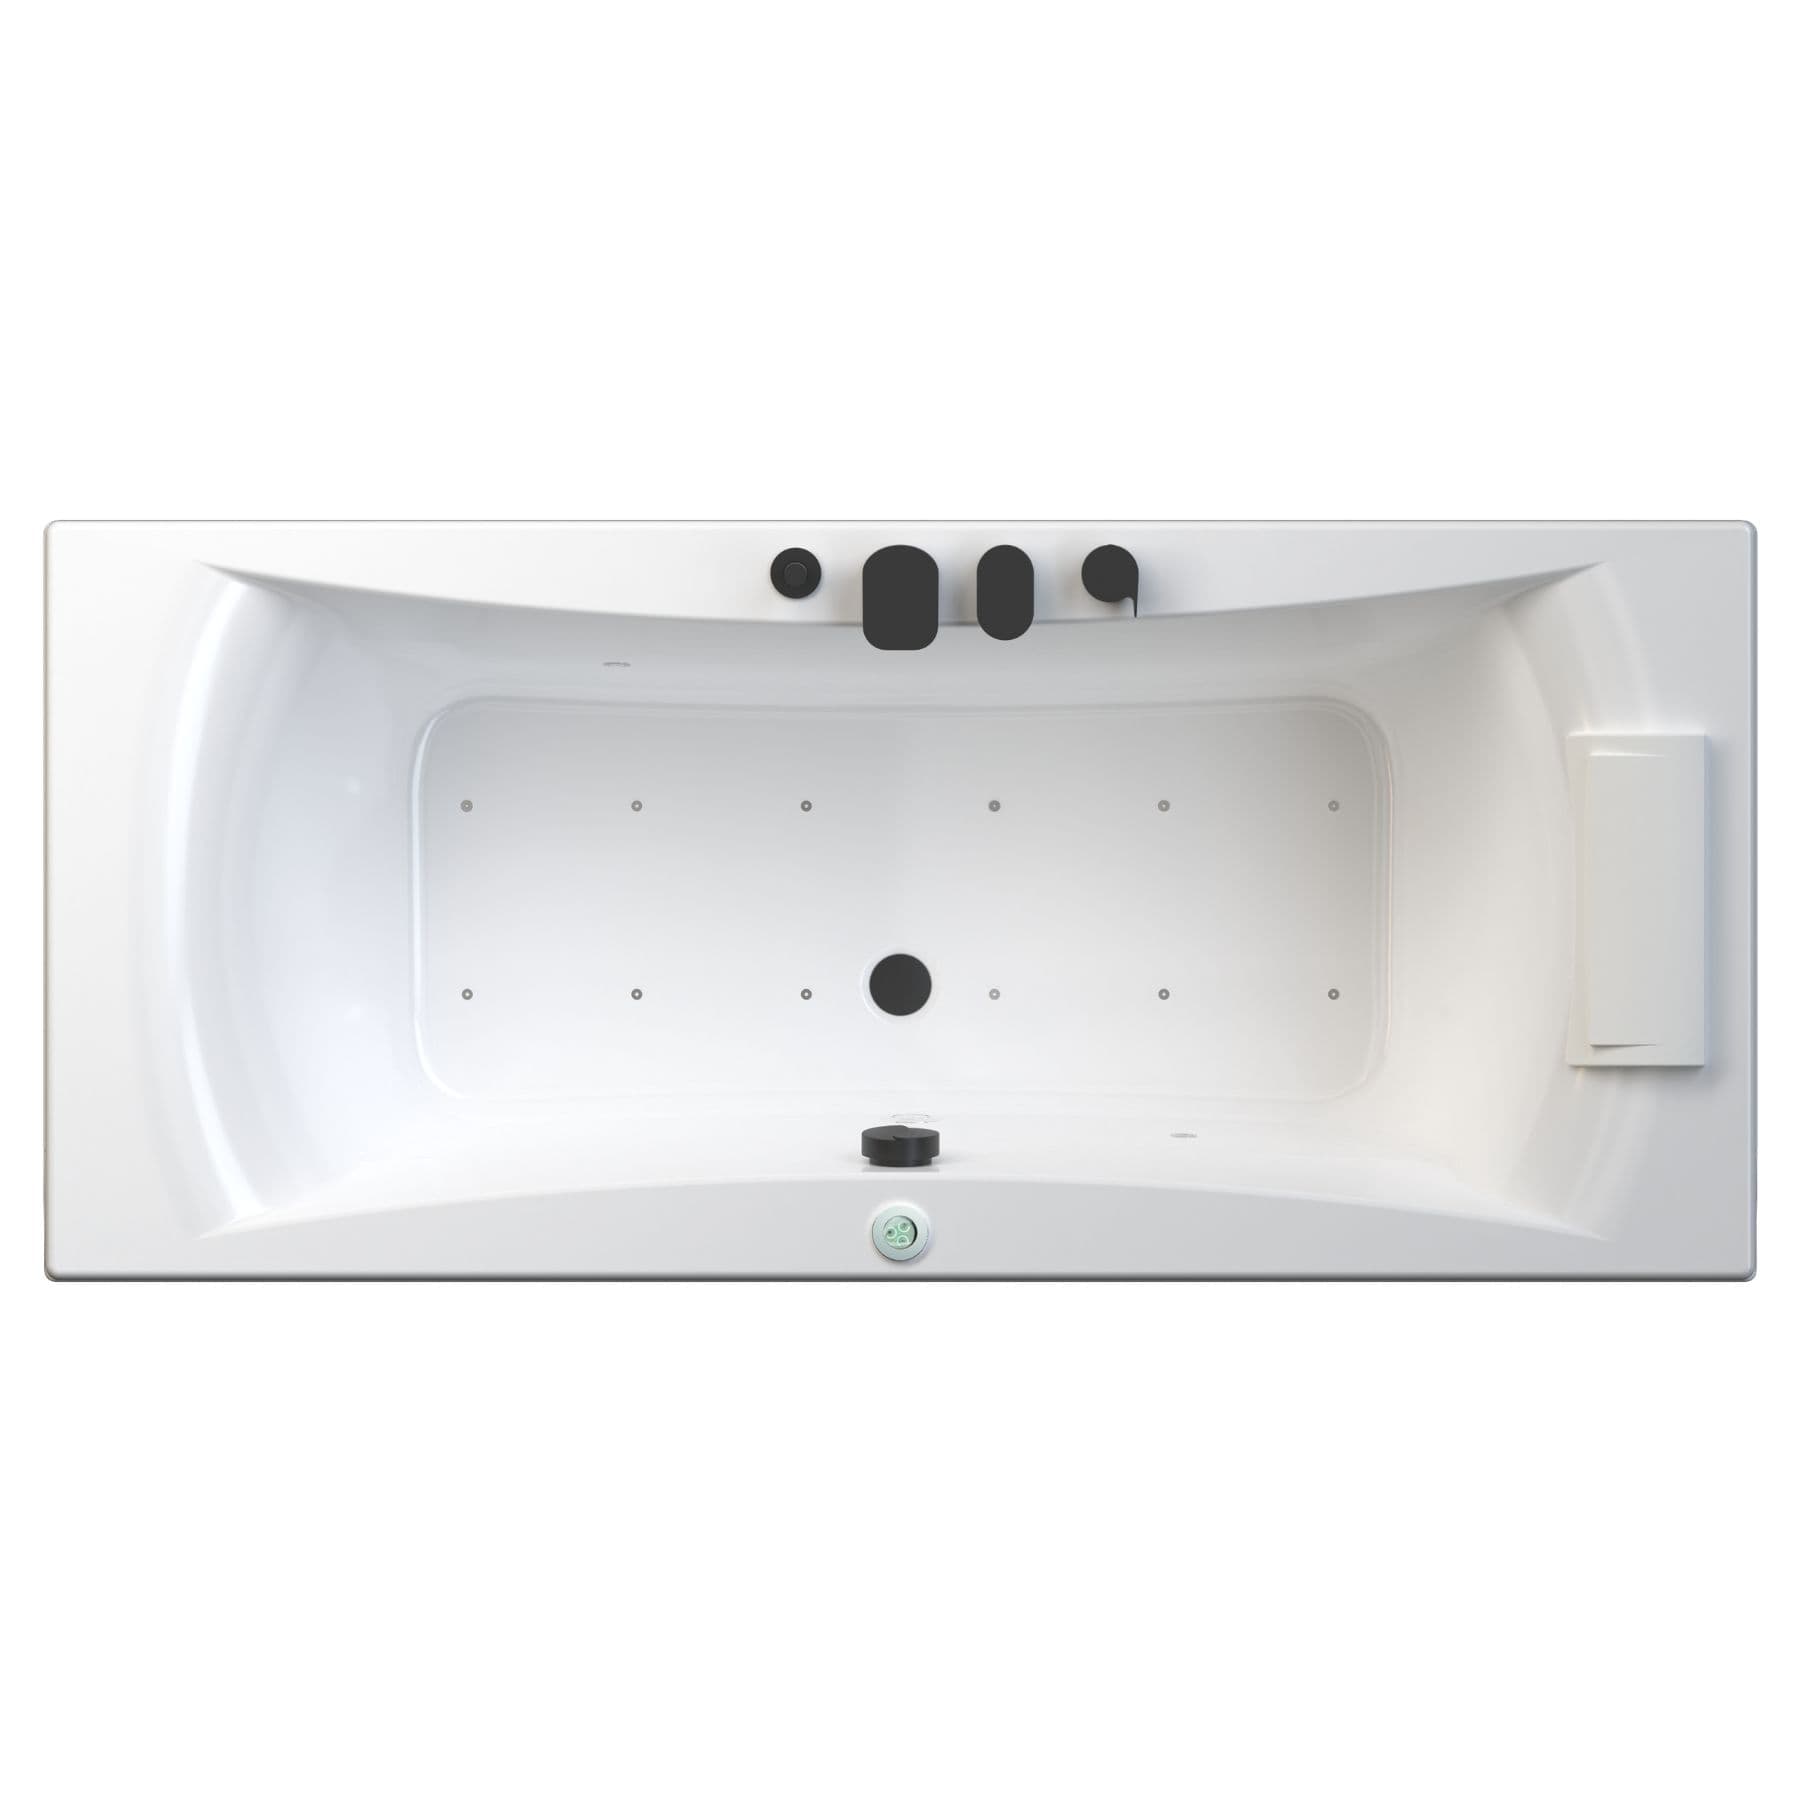 Baignoire balnéo CONCERTO 170x75 sur châssis métal, système balnéo STAR MIXTE DIGIT tête bain à droite